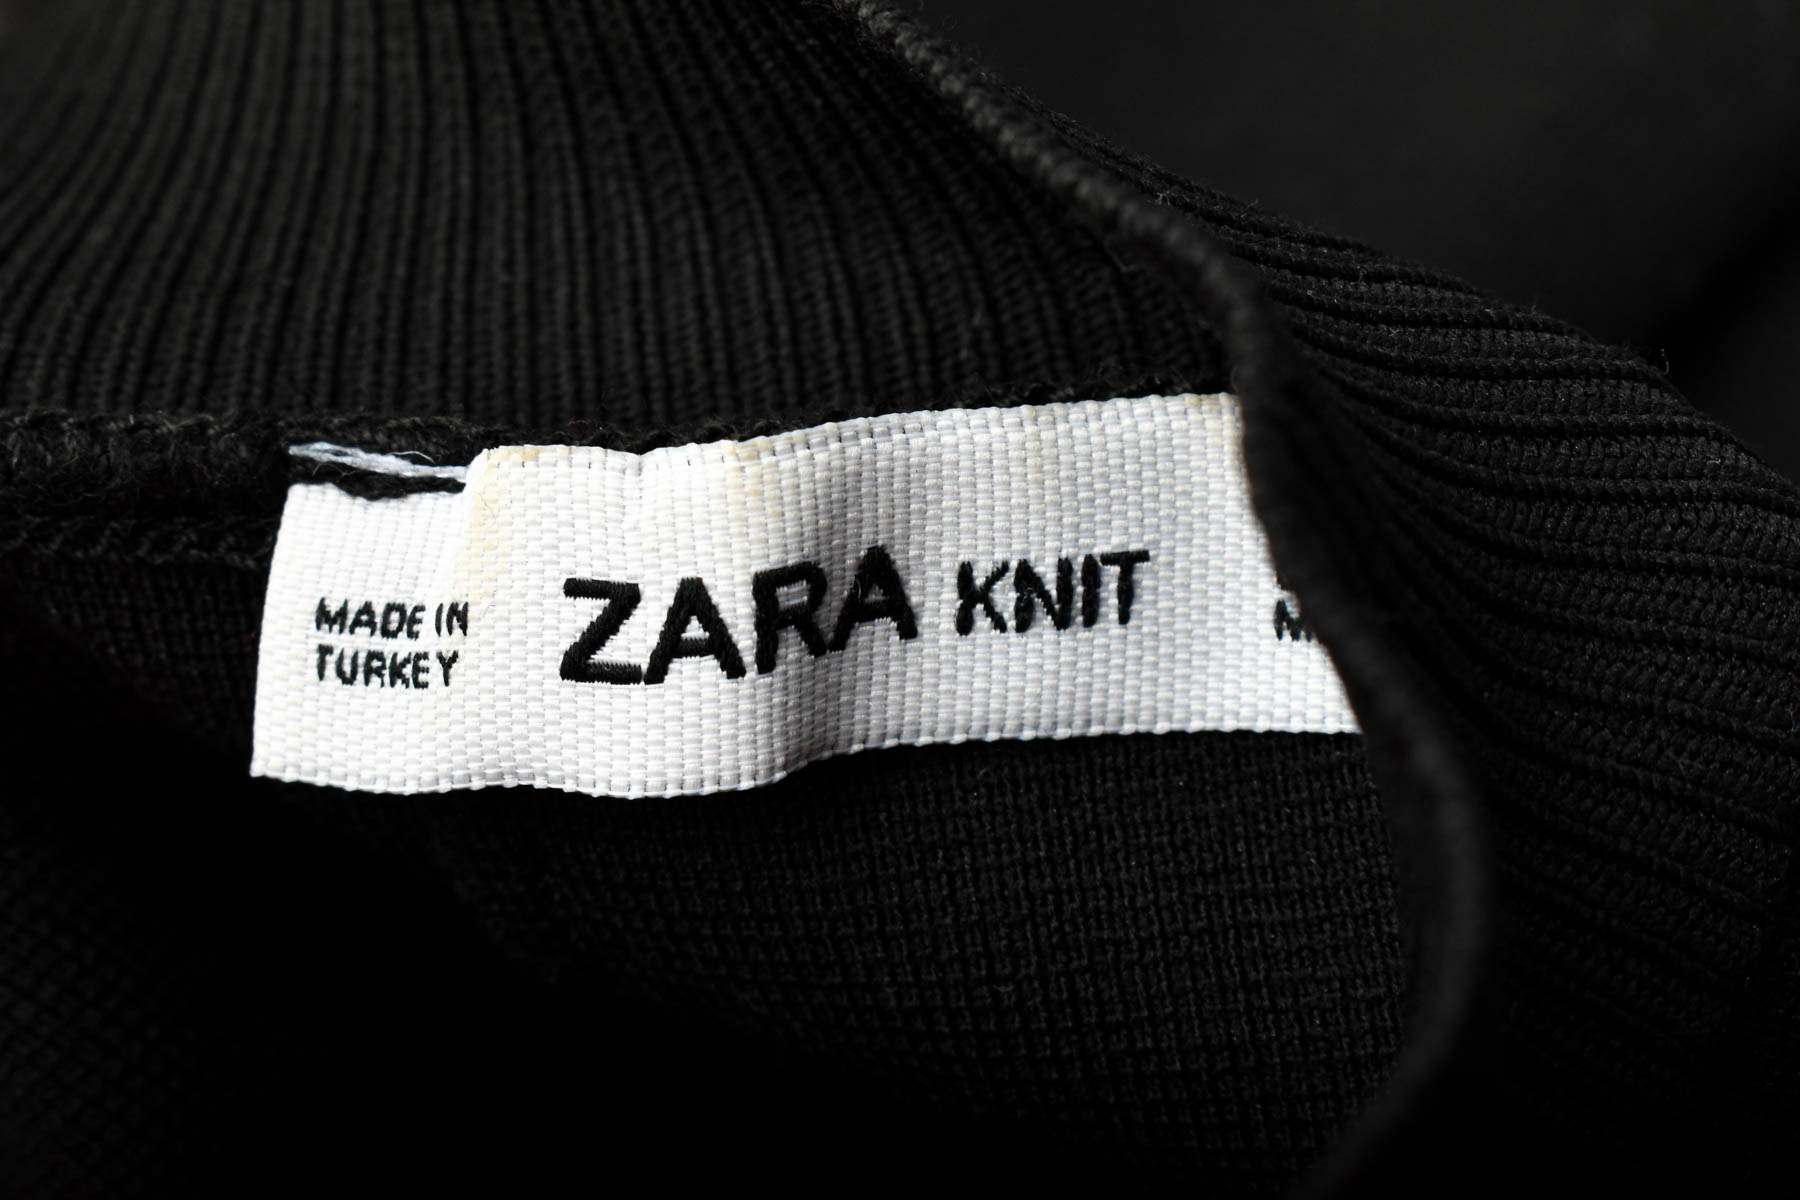 Φόρεμα - ZARA Knit - 2